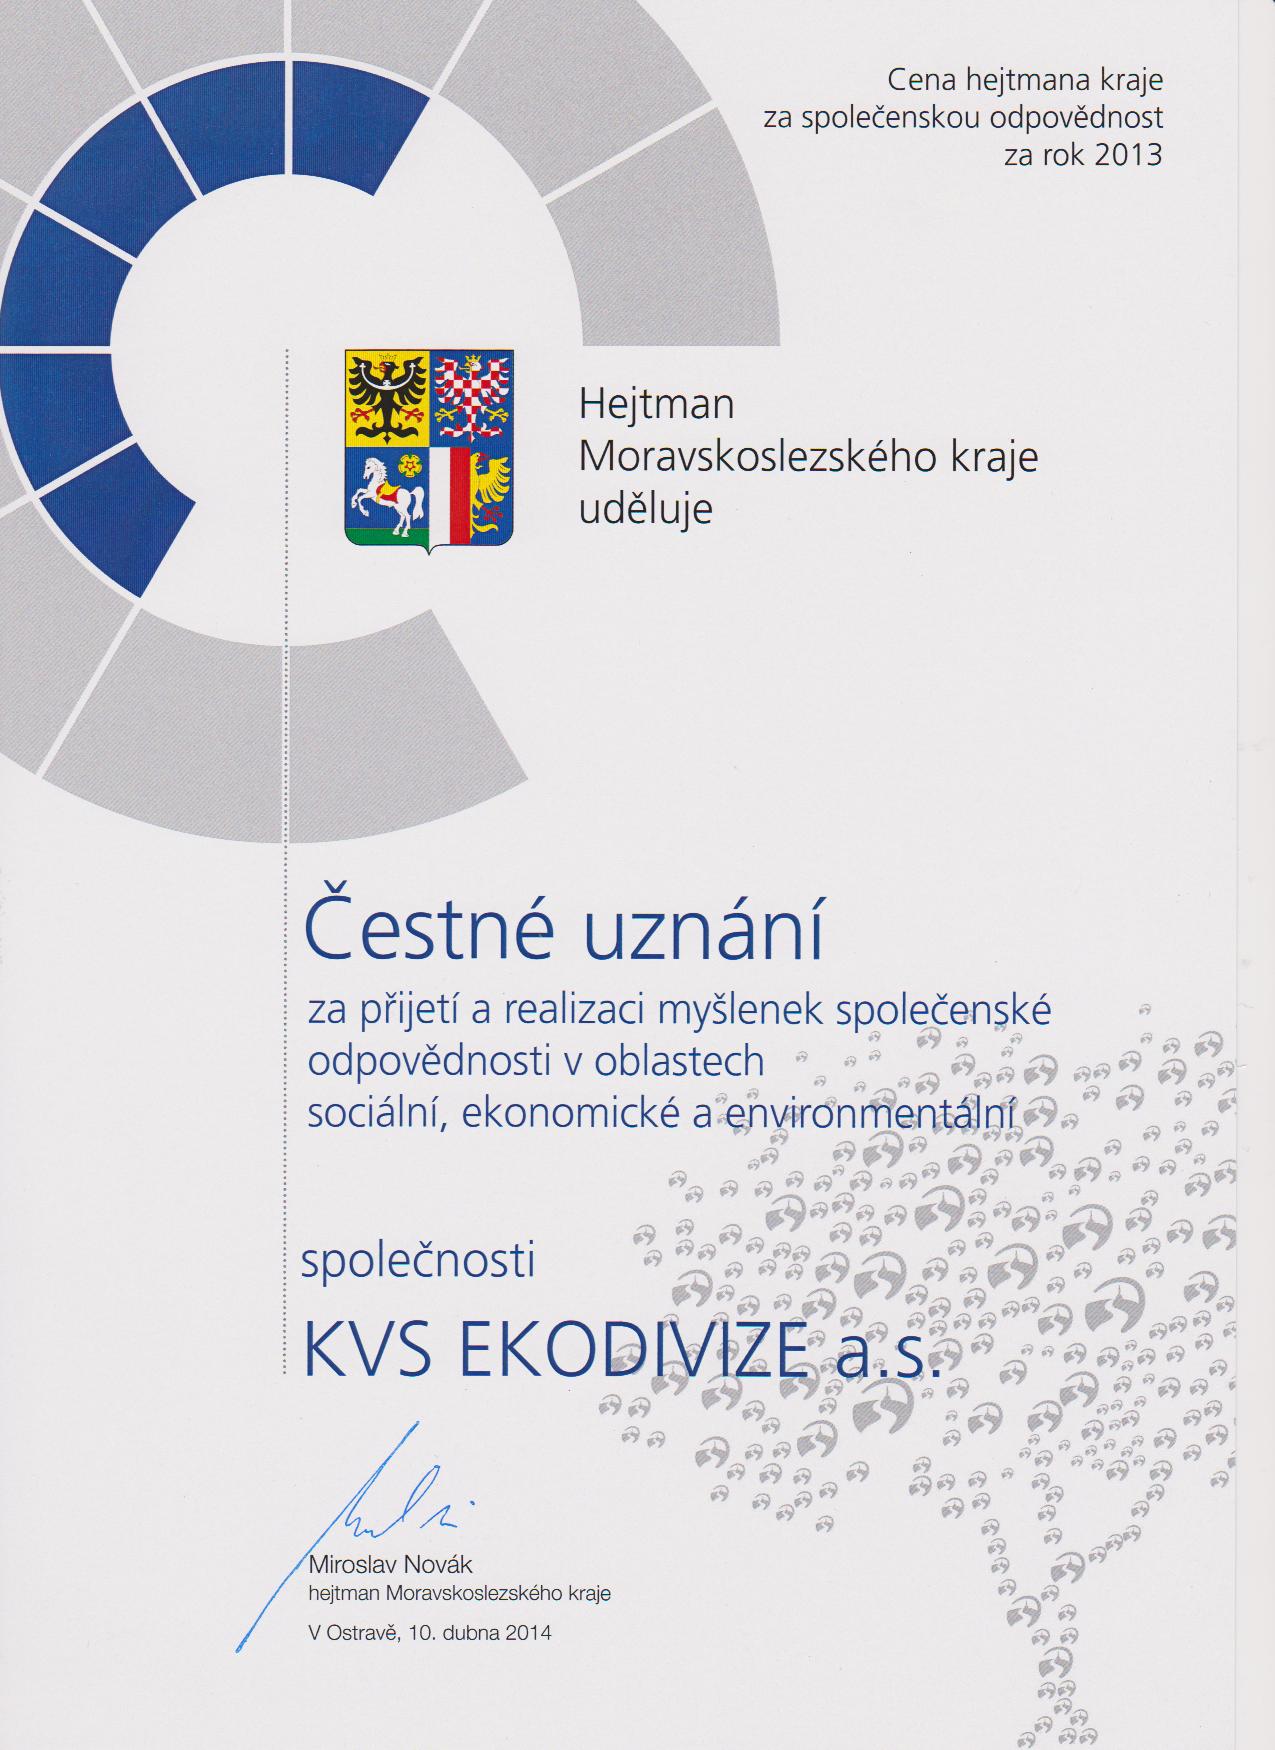 Čestné uznání pro KVS EKODIVIZE a.s. za rok 2013